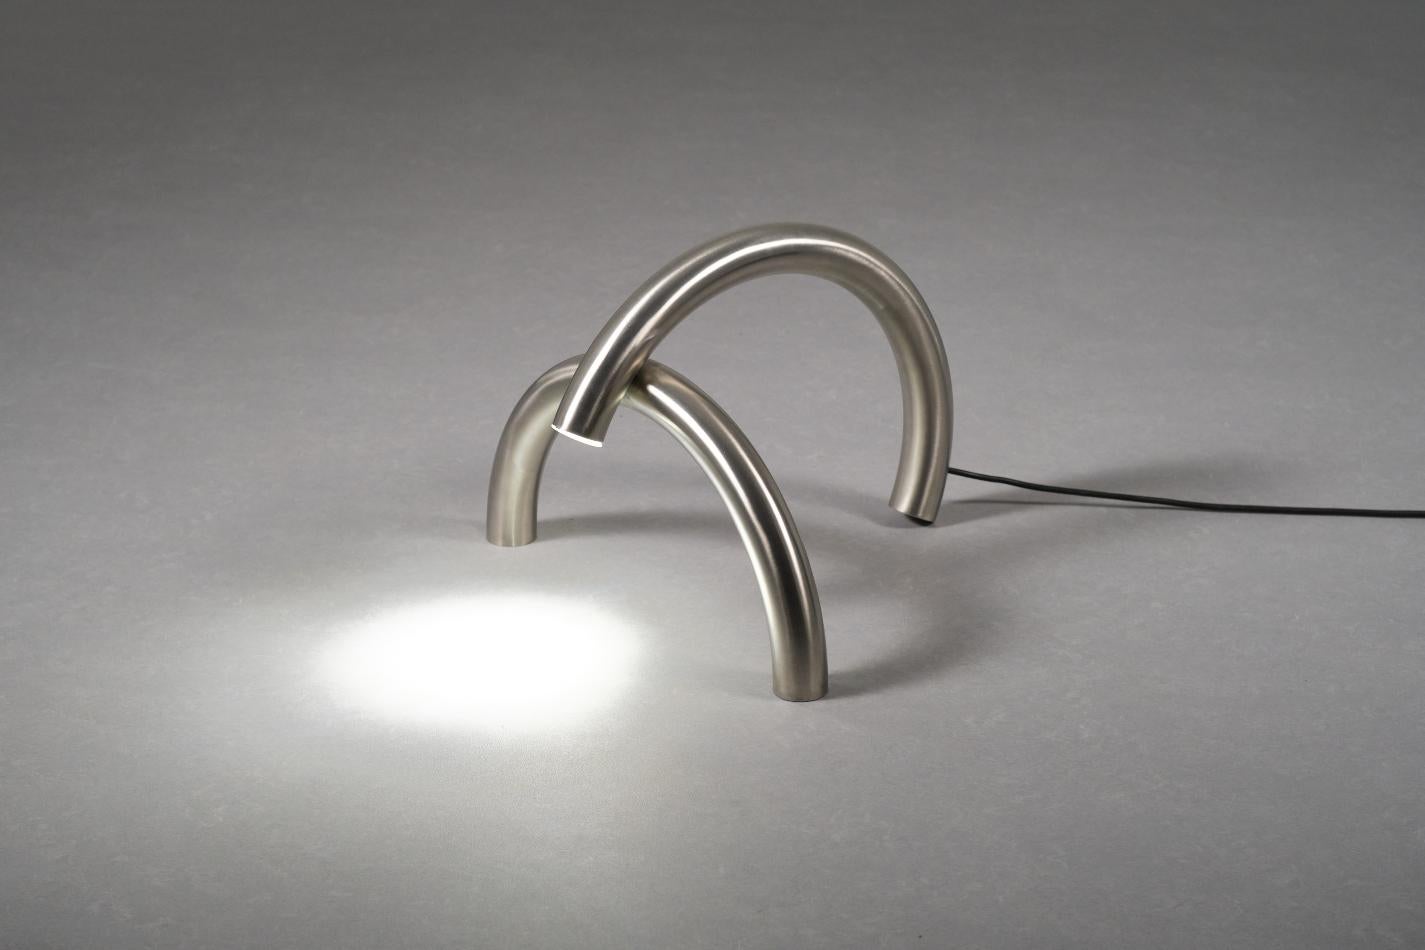 Max Enrich spielt mit dem schmalen Grat zwischen Design und reiner Ästhetik und konzentriert sich auf die ständige Suche nach kühnen und anregenden Formen, die als Stuhl, als Tisch oder als Skulptur verwendet werden können. Es geht darum, eine